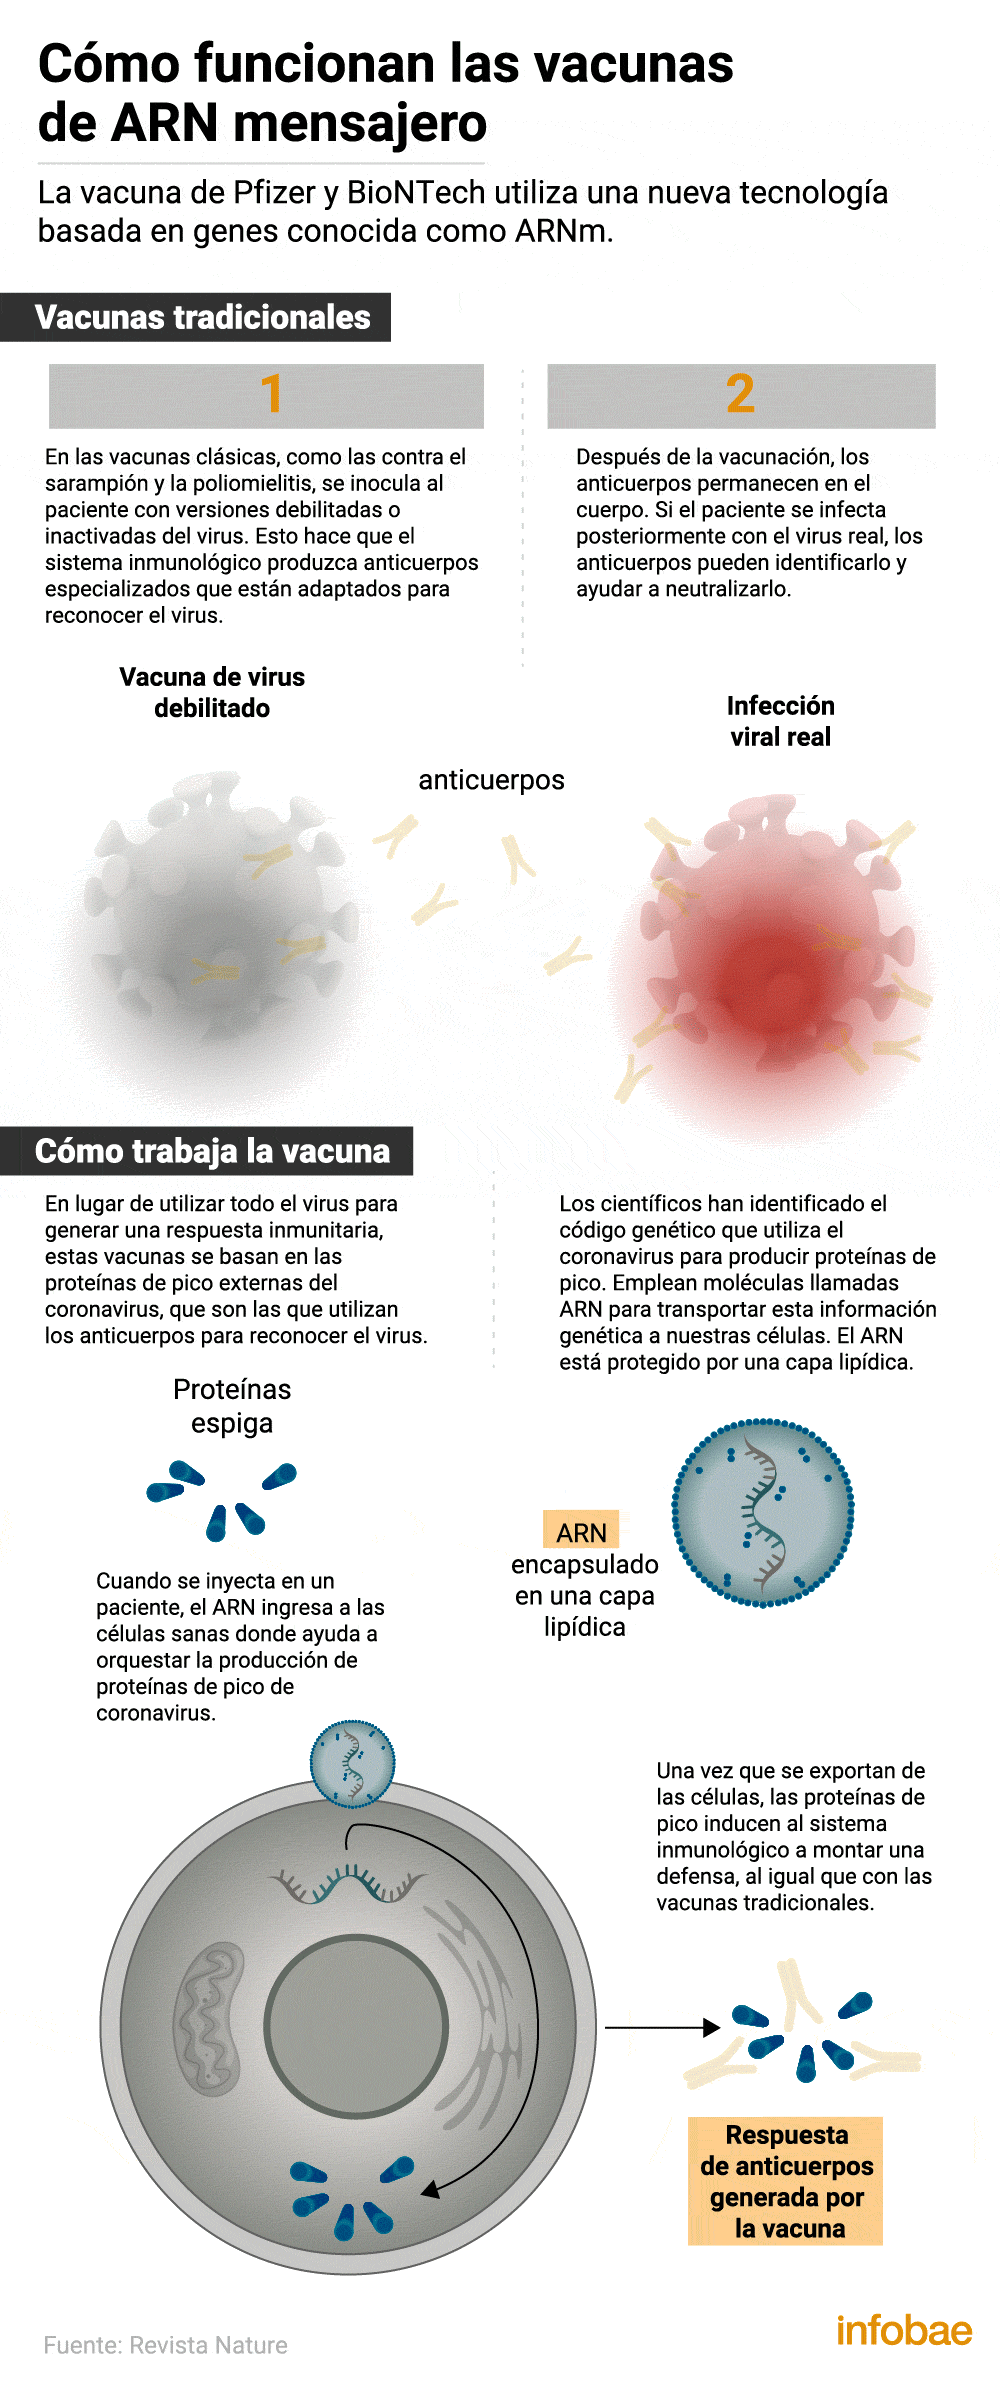 Así funciona la nueva vacuna ARN mensajero (Infografía: Marcelo Regalado)

